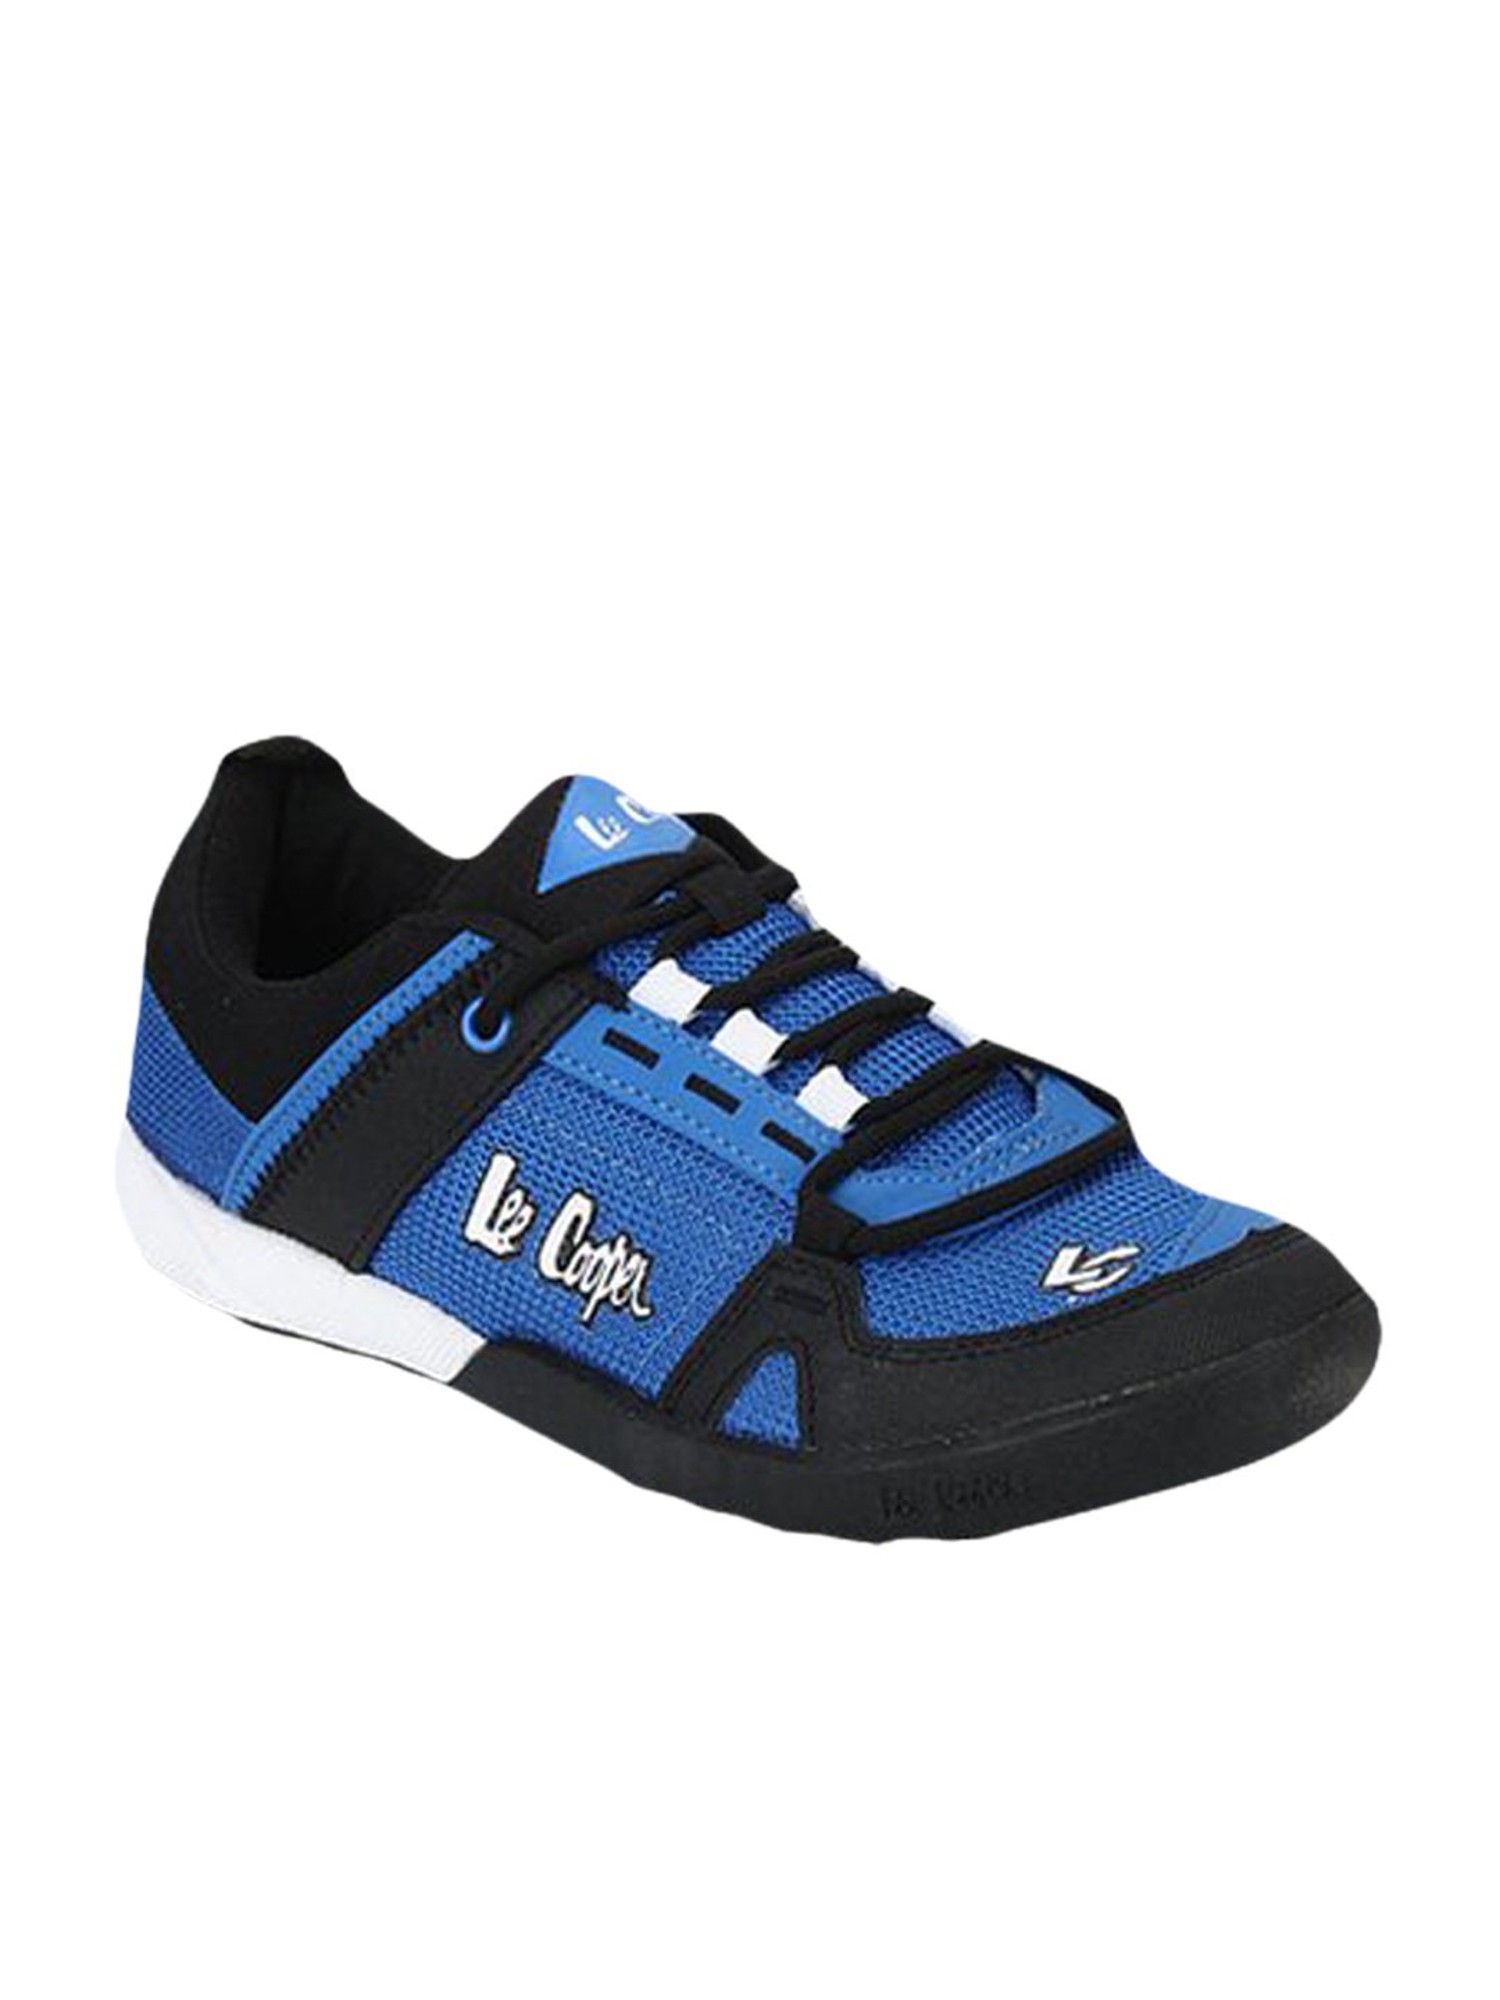 Lee Cooper Blue \u0026 Black Running Shoes 